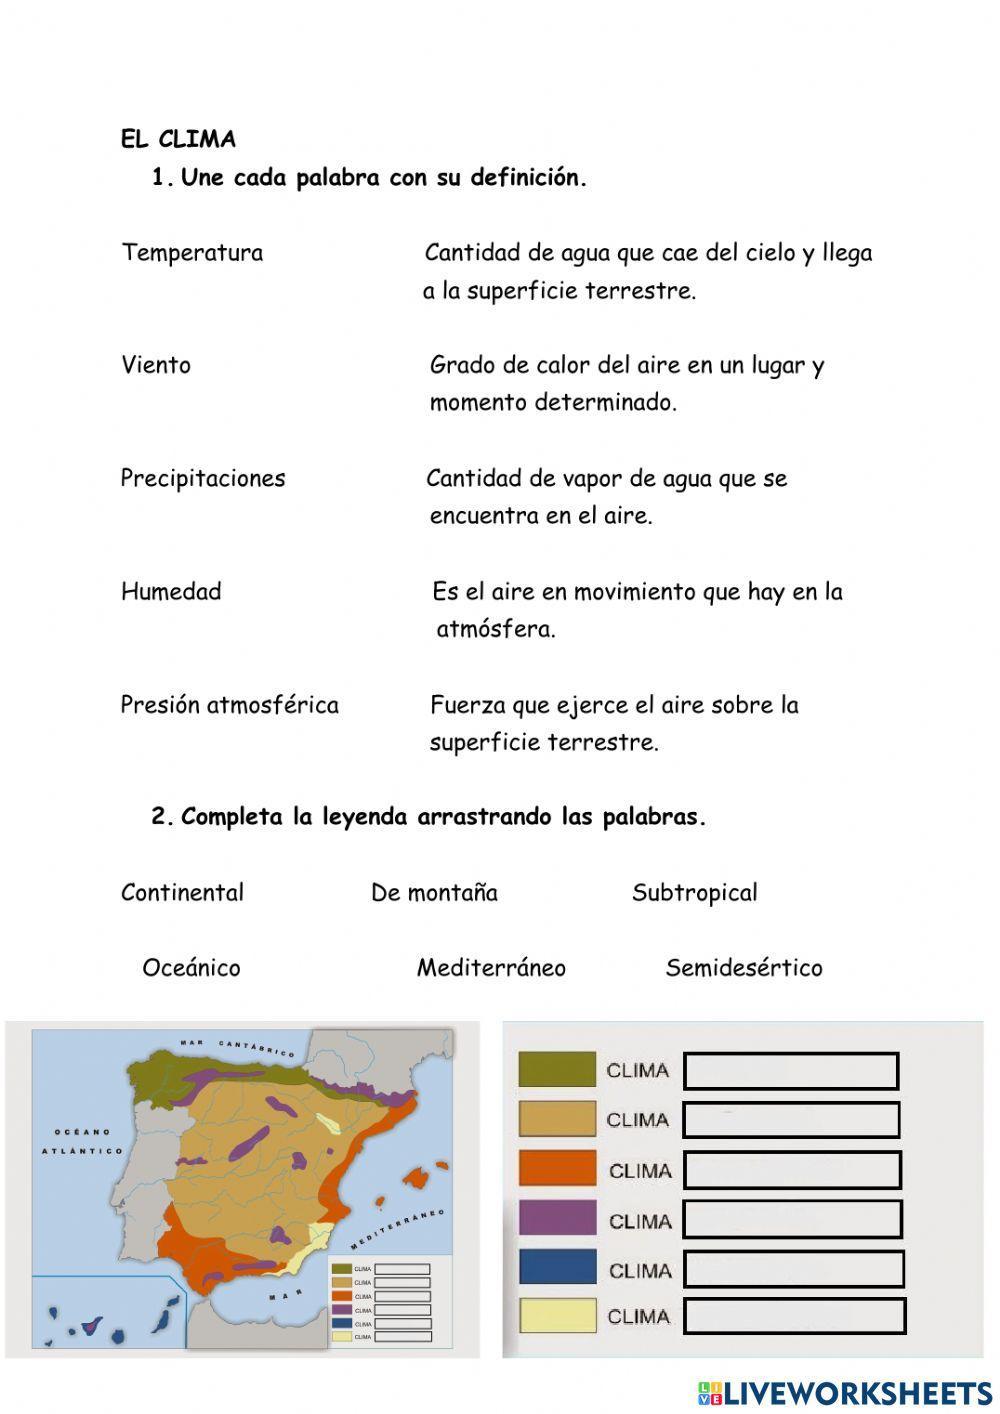 El clima. Elementos y climas de España